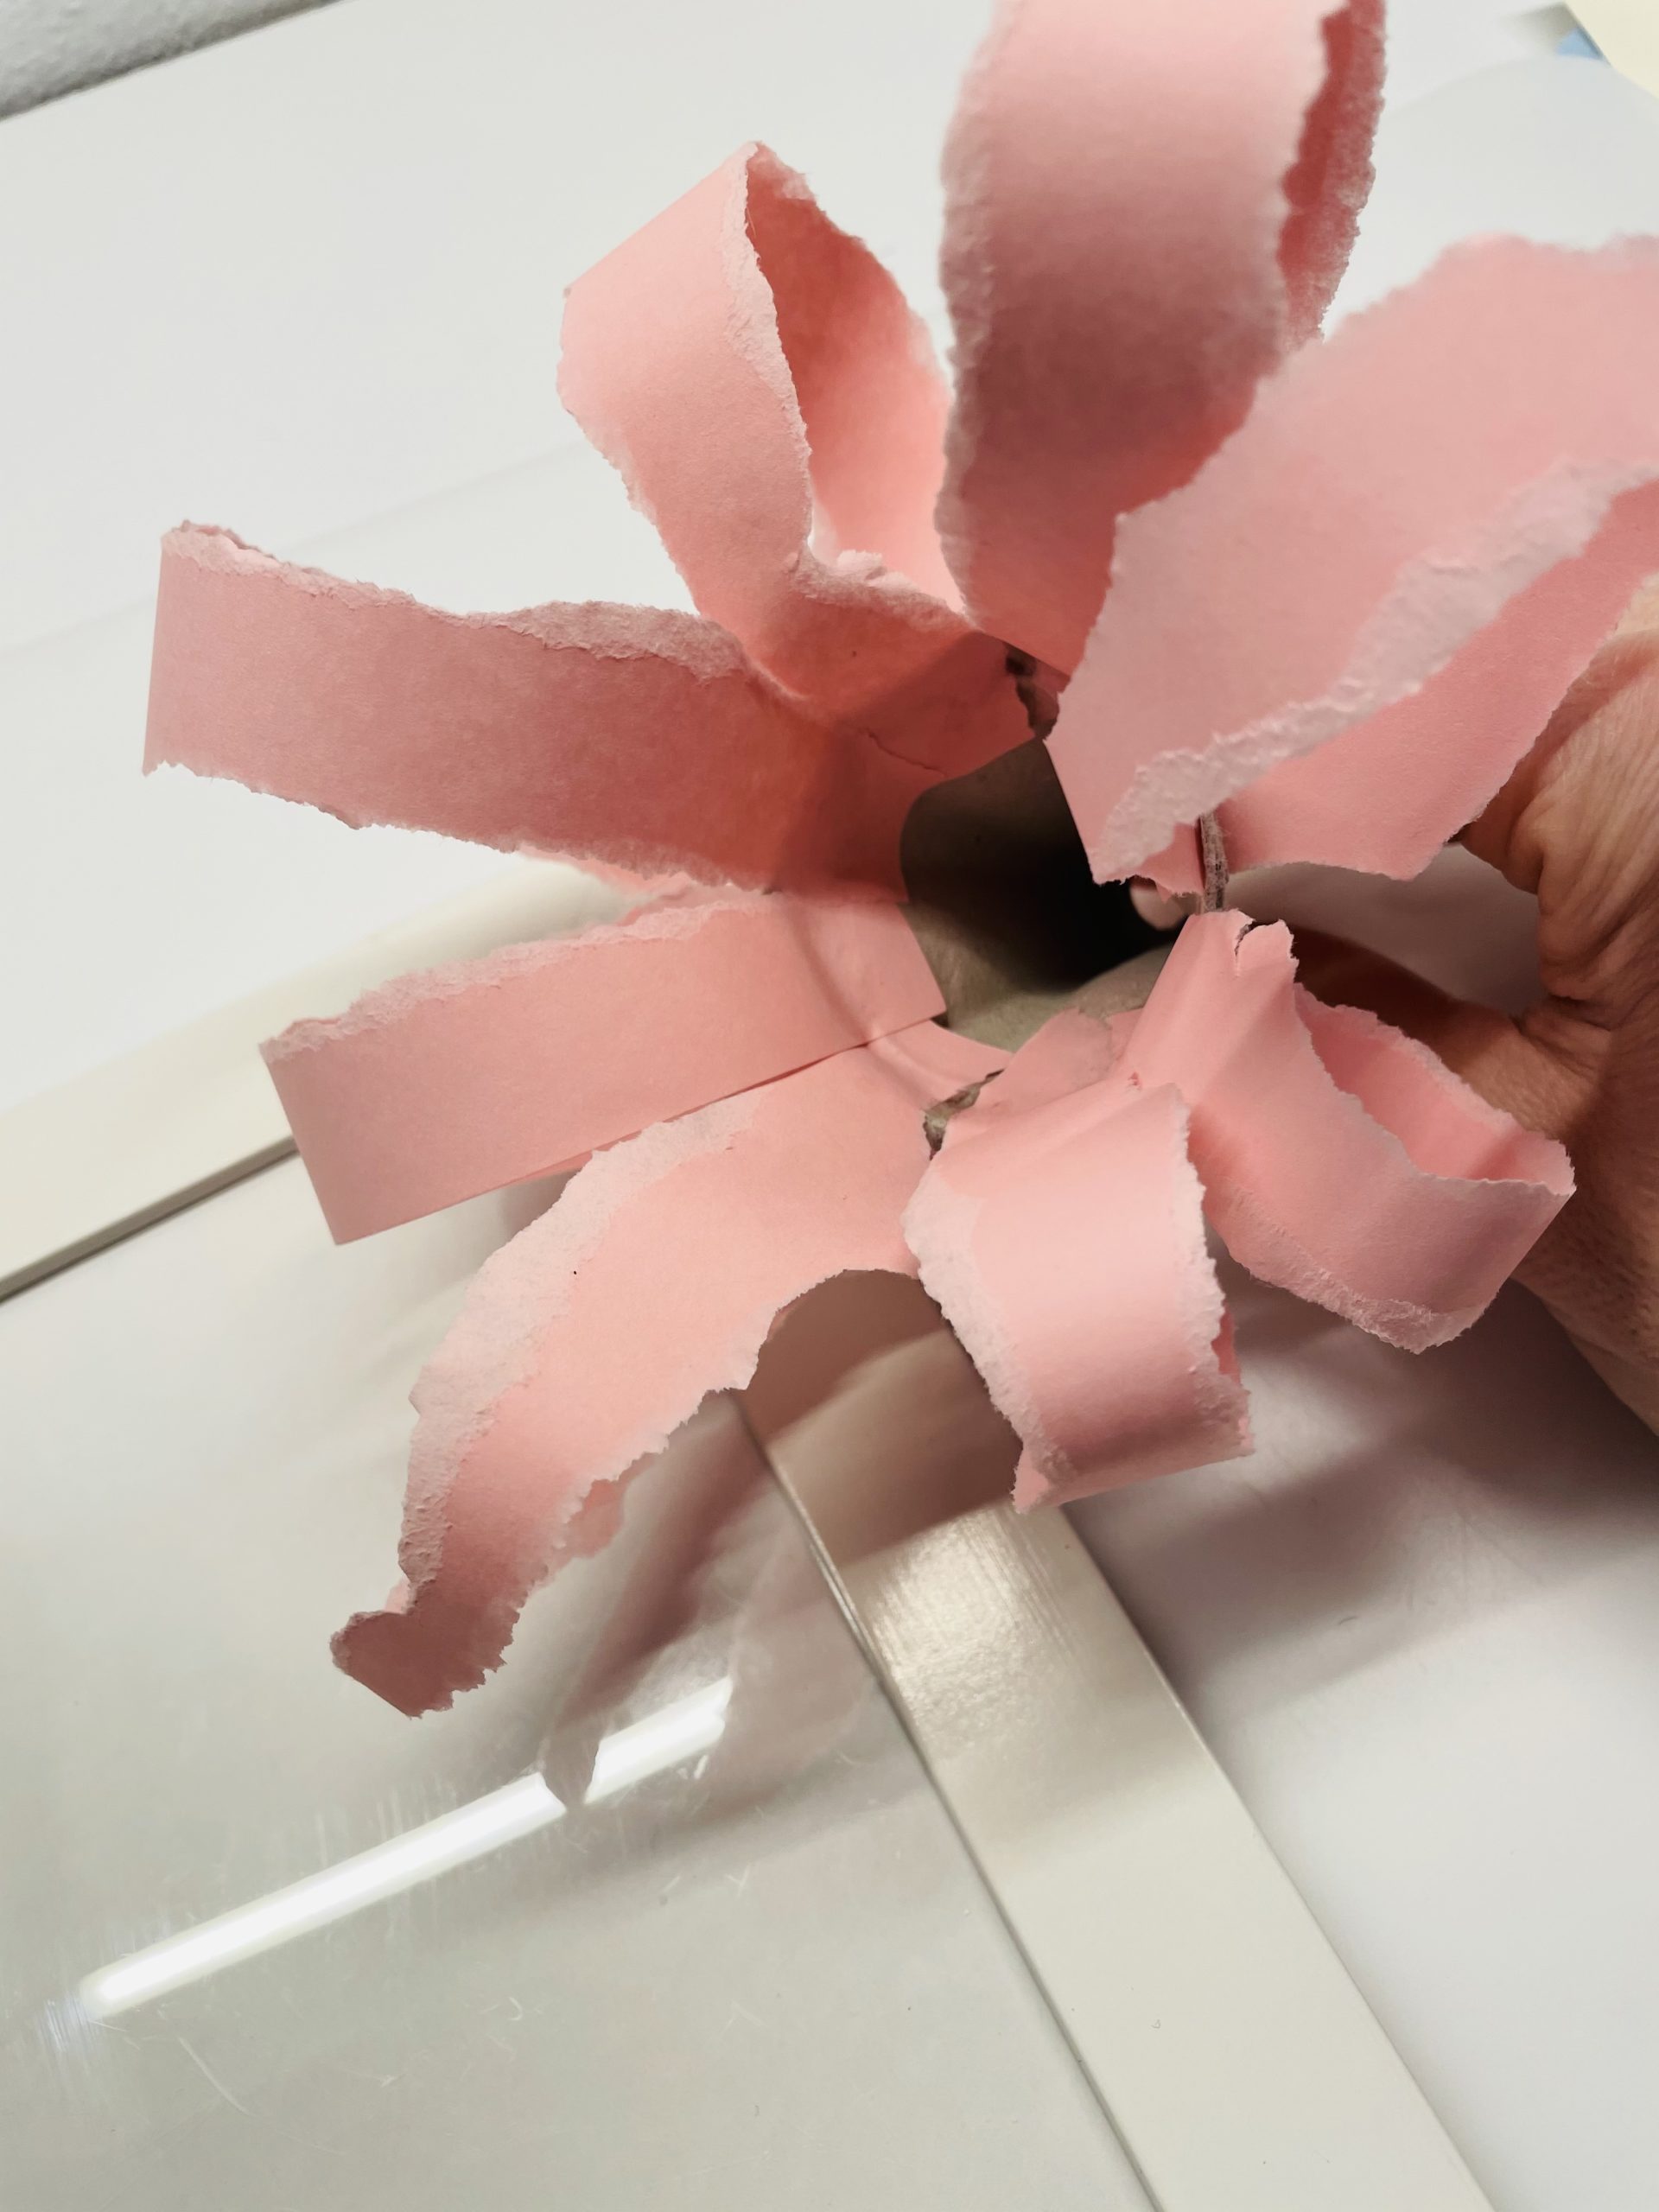 Bild zum Schritt 3 für die Kinder-Beschäftigung: 'Steckt jedoch das Papiertaschentuch noch nicht in den Blütenkelch.'